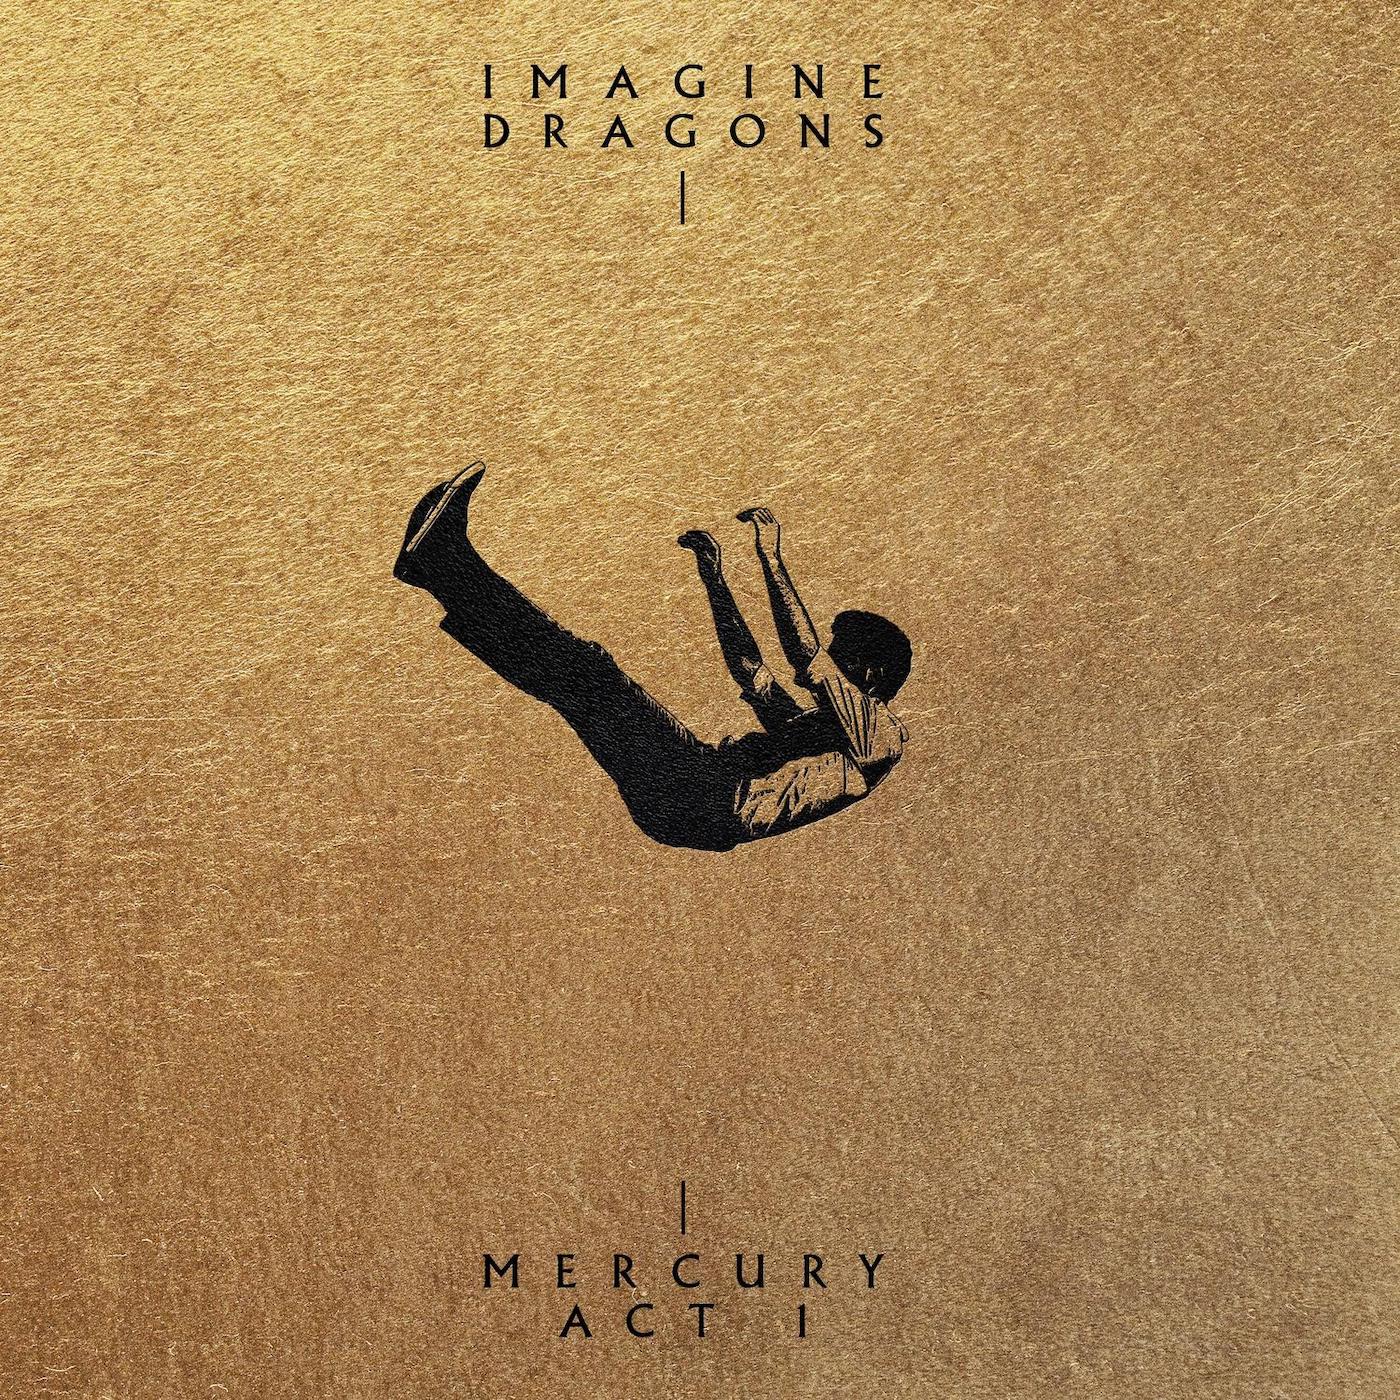 Mercury - Act 1, Imagine Dragons Wiki